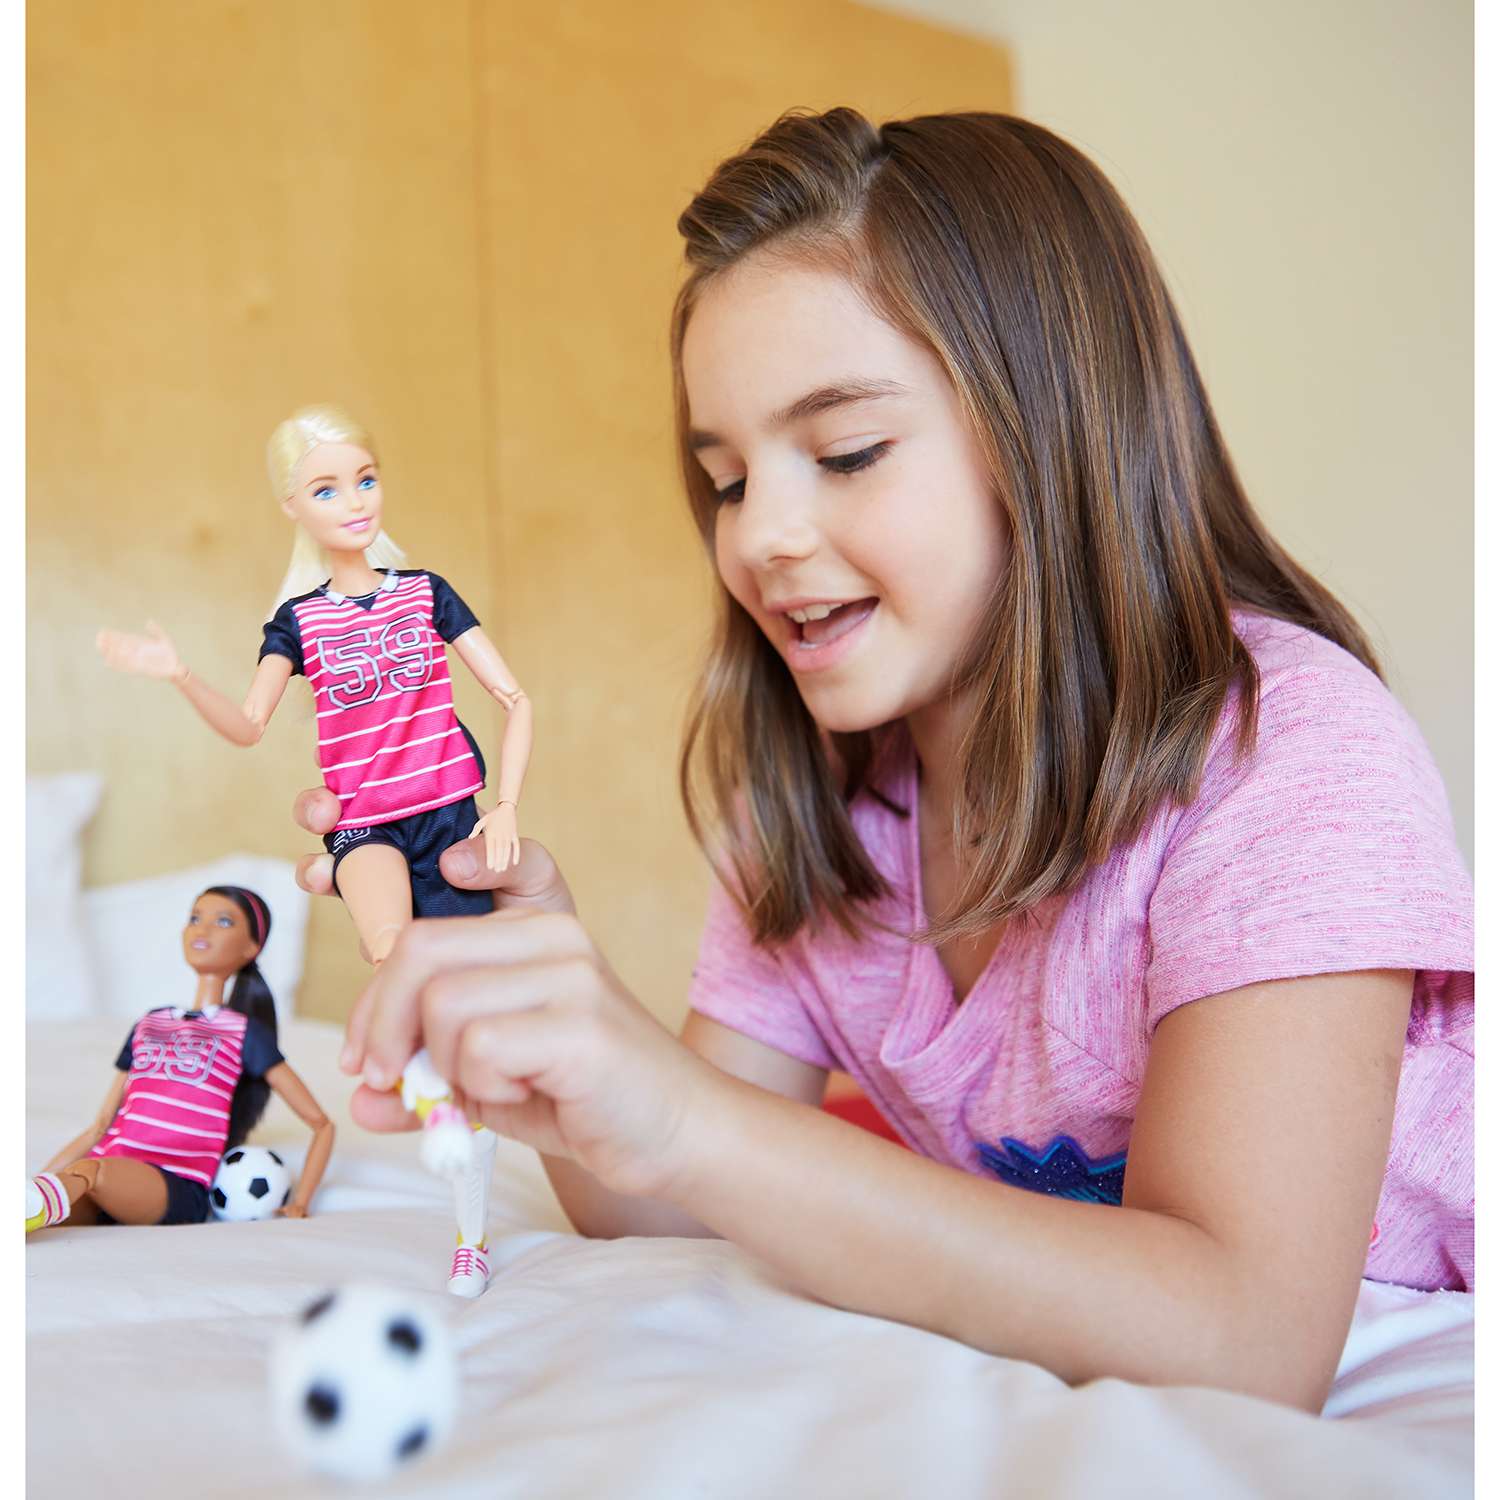 Малышка крепко держала кукол. Девочка играет в куклы. Девочки играют. Девушка играет в куклы. Куклы для девочек.